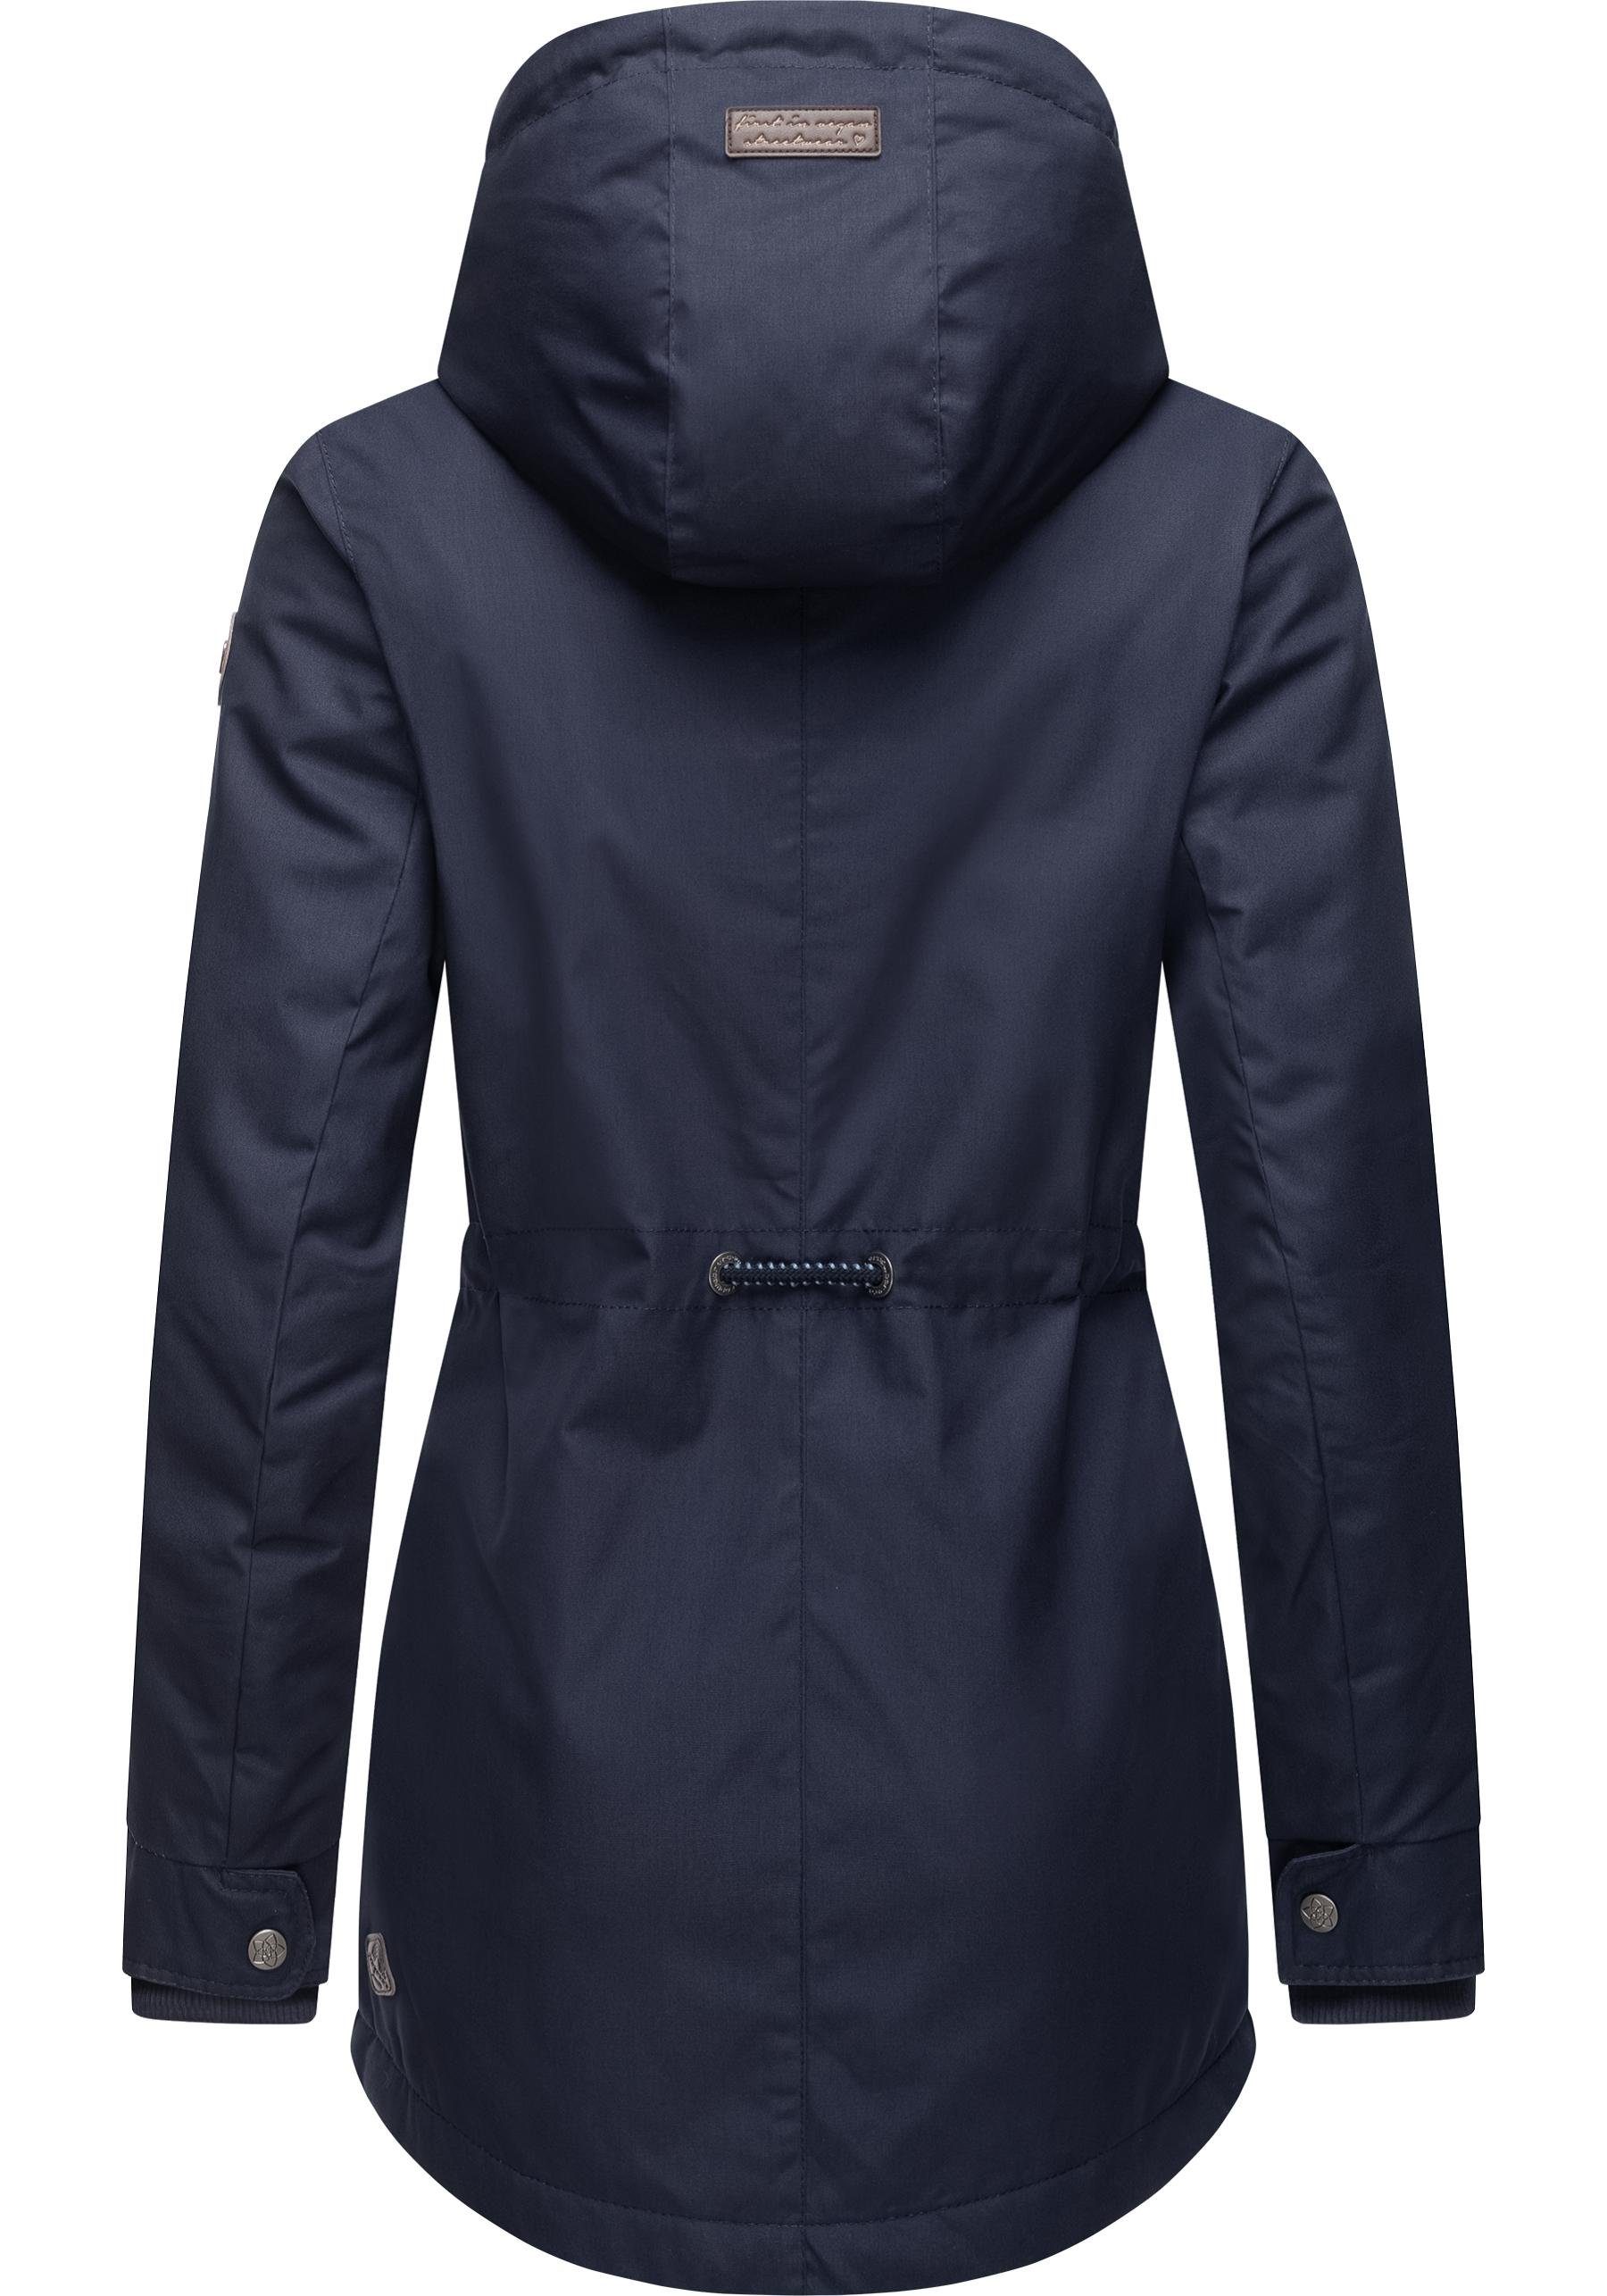 Ragwear Winterjacke Monadis jeansblau die Jahreszeit kalte Label Winterparka für stylischer Black